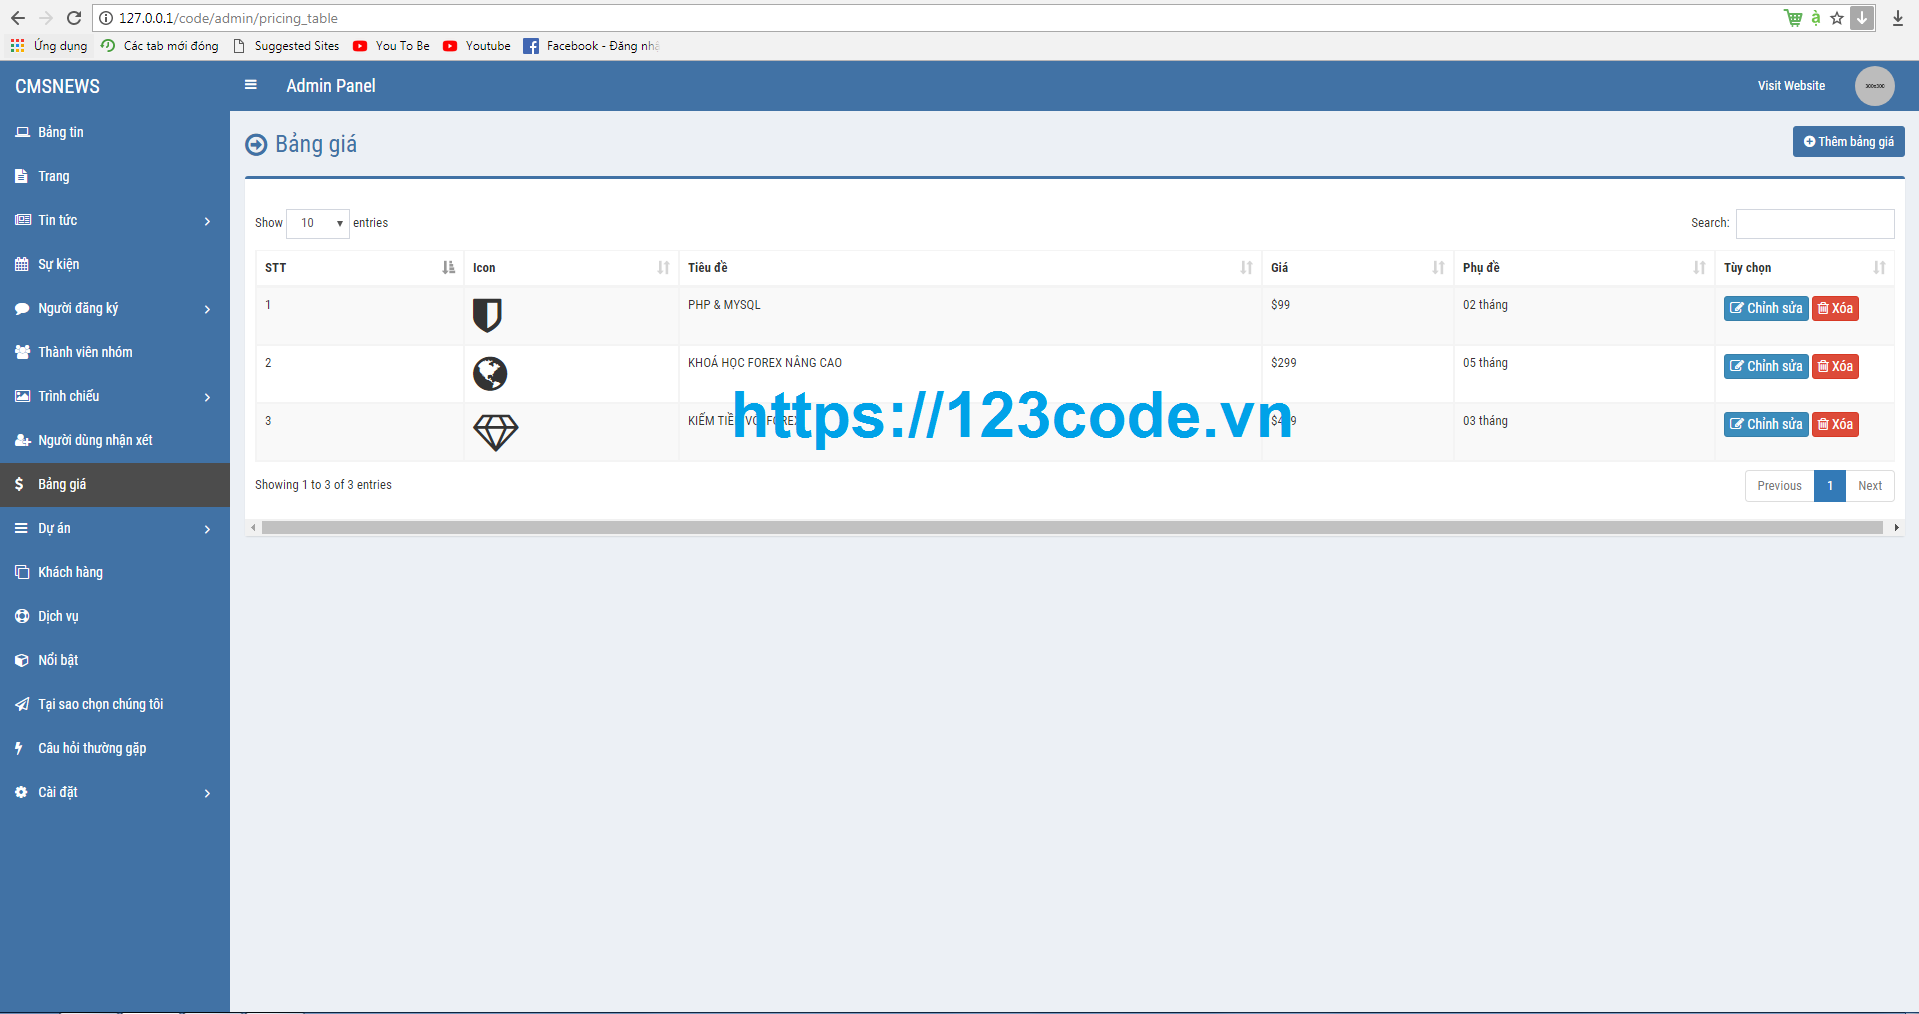 Tải miễn phí source code website giới thiệu sản phẩm dich vụ php CodeIgniter Framework